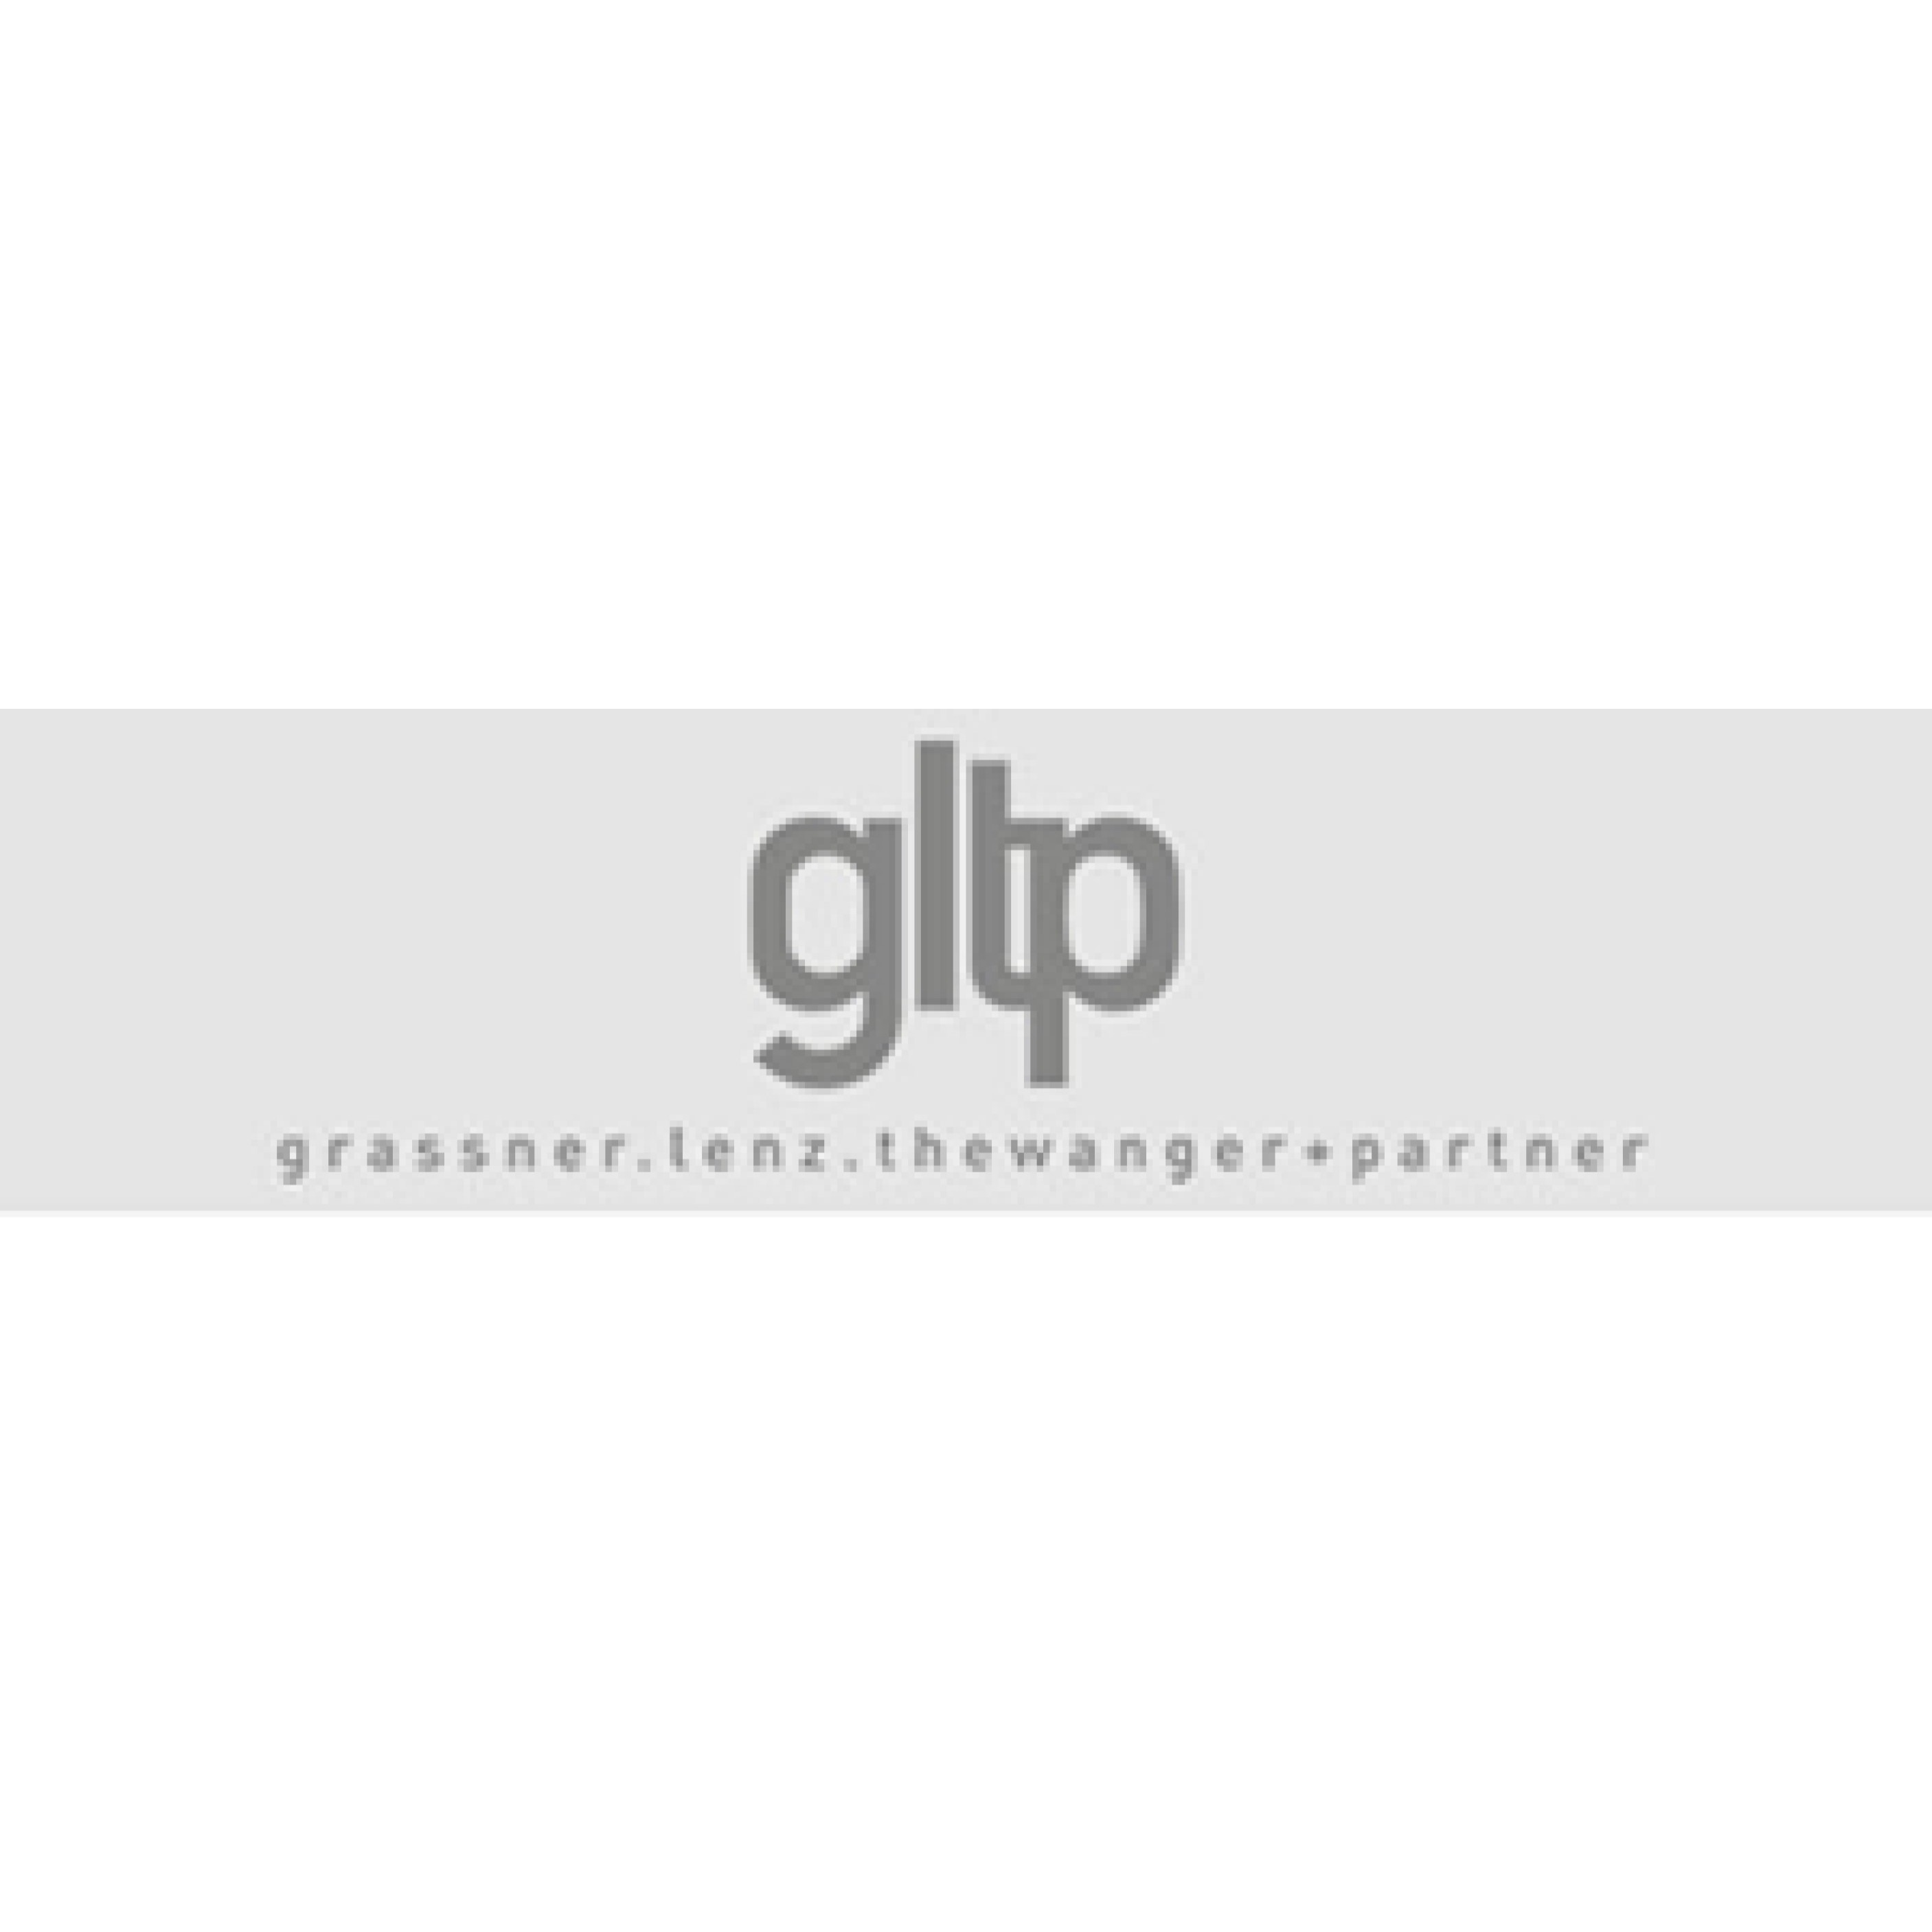 GLTP Grassner, Lenz, Thewanger & Partner Logo